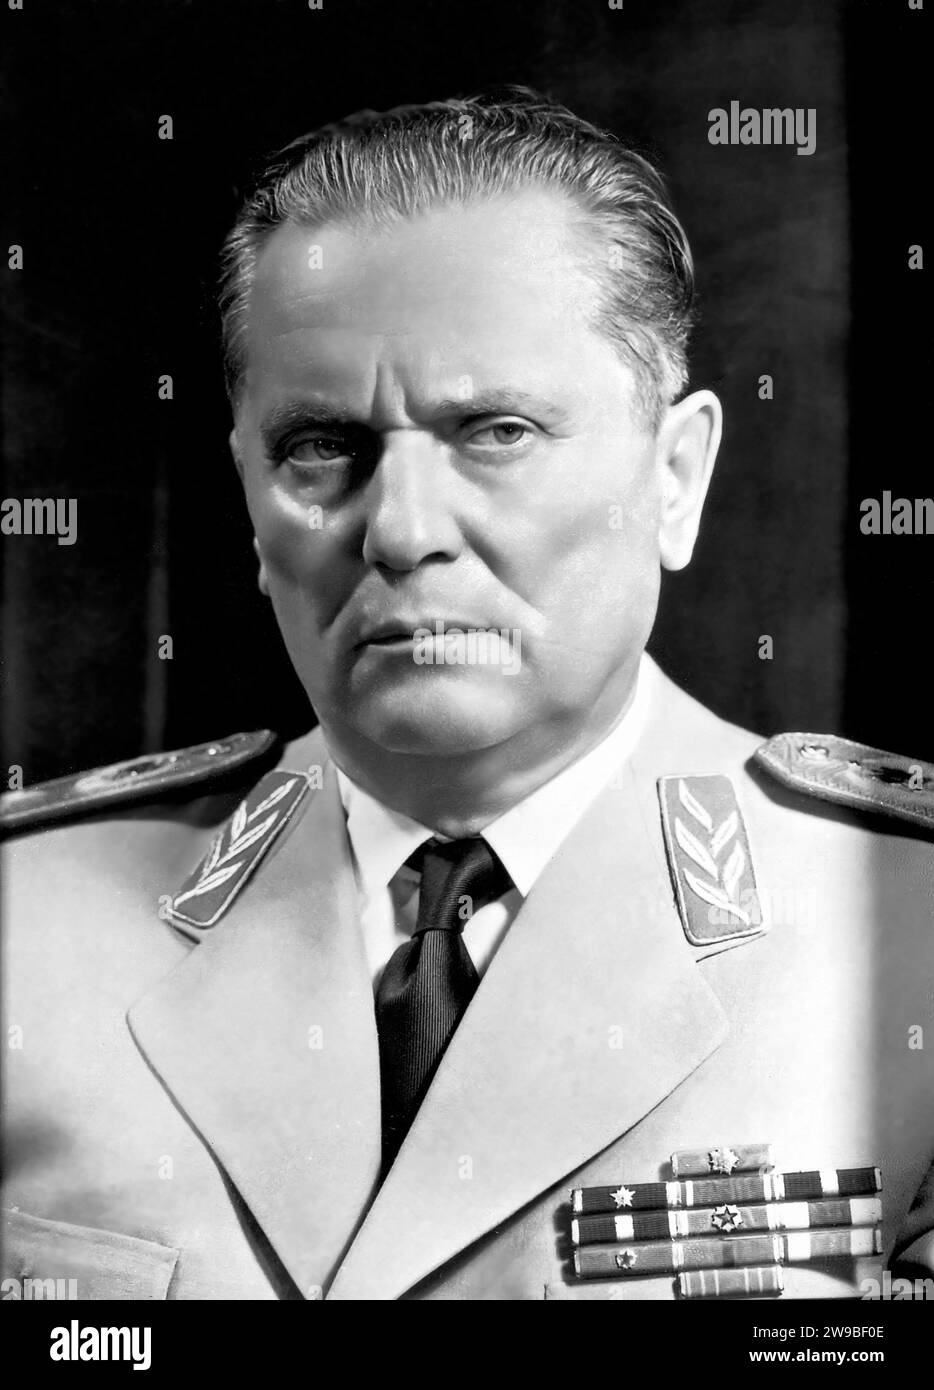 Tito. Portrait de l'ancien président et premier ministre de Yougoslavie, Josip Broz (1892-1980), portrait officiel, 1961 Banque D'Images